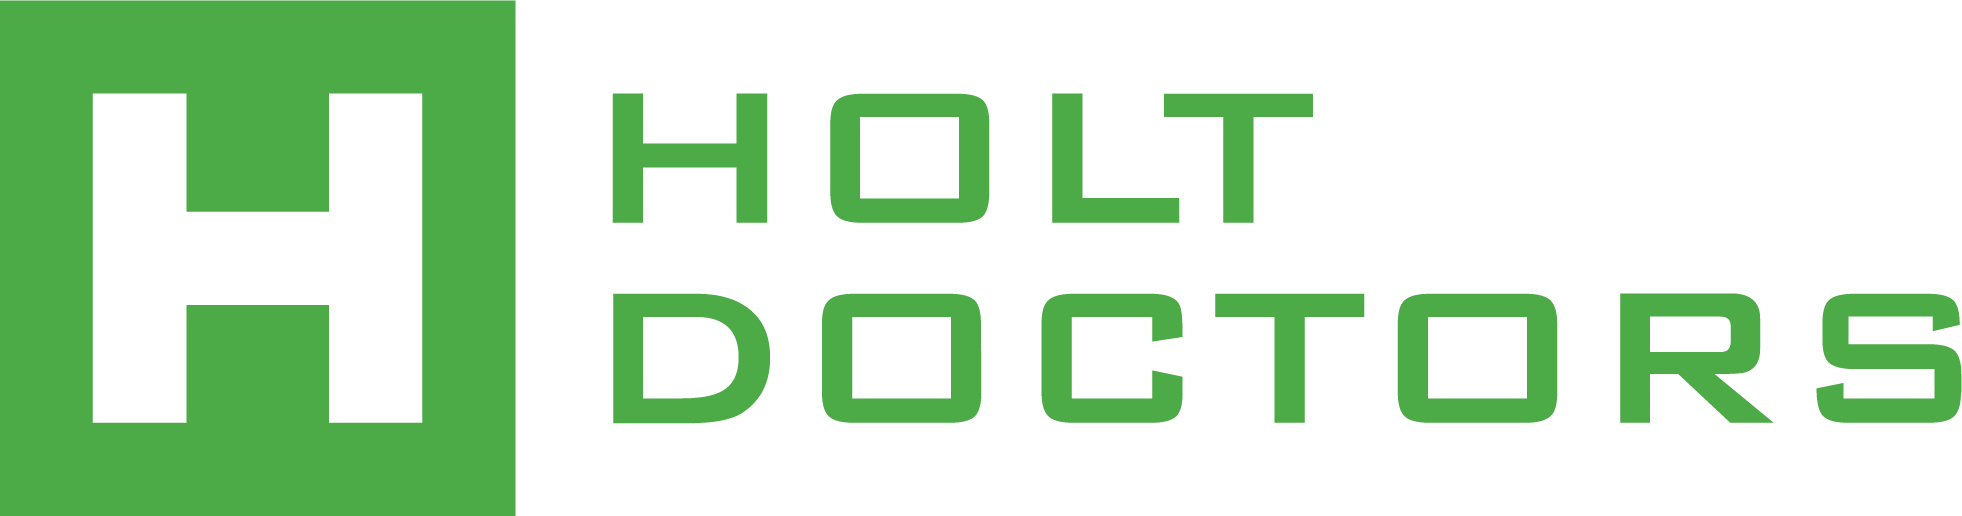 logo for Holt Doctors Ltd